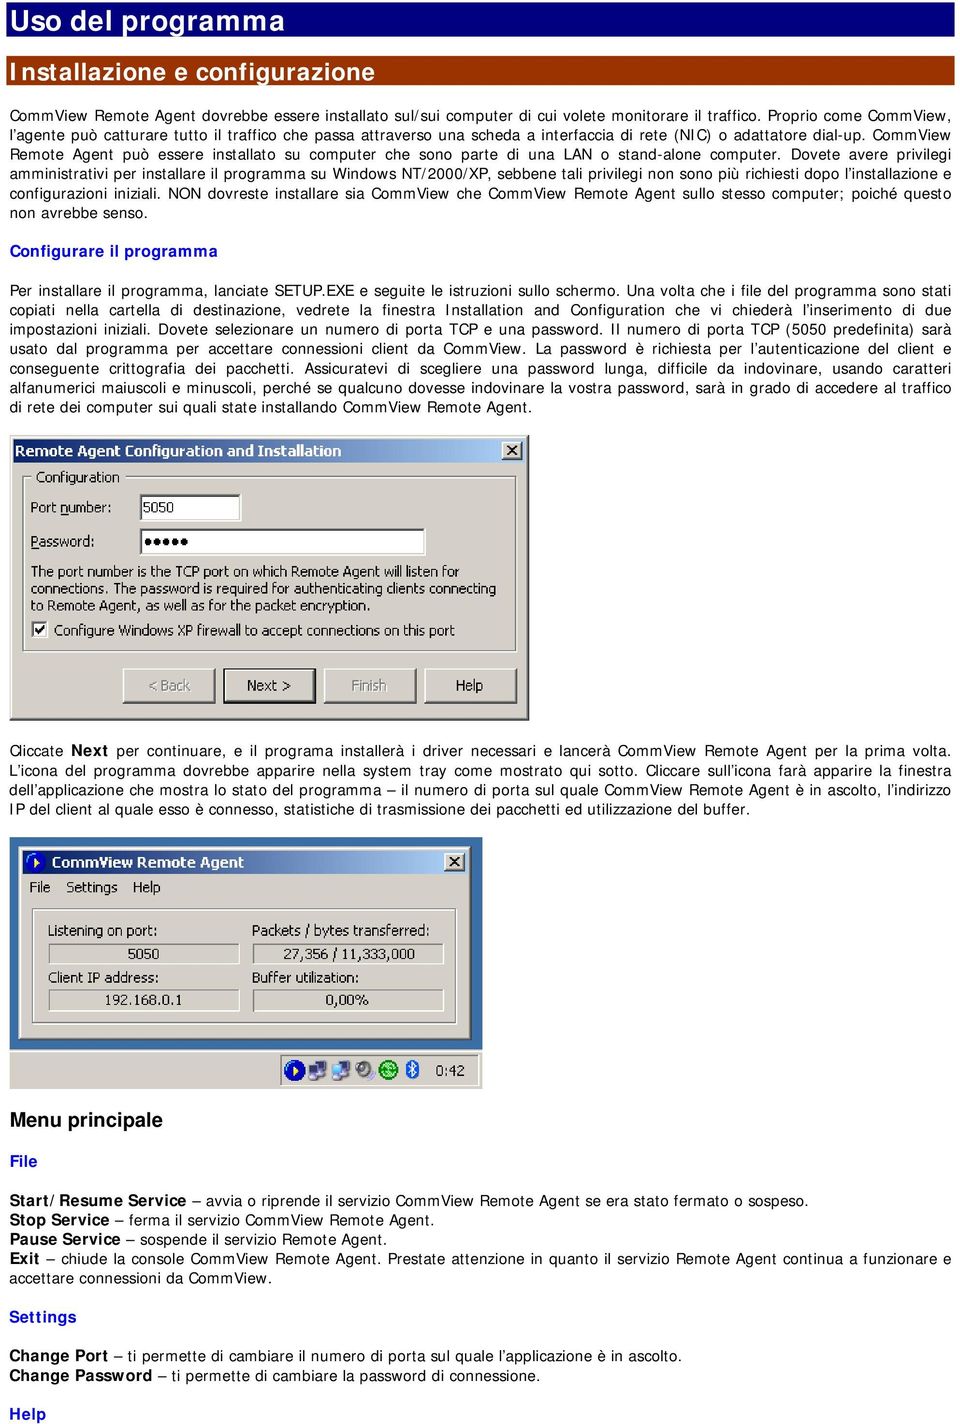 CommView Remote Agent può essere installato su computer che sono parte di una LAN o stand-alone computer.